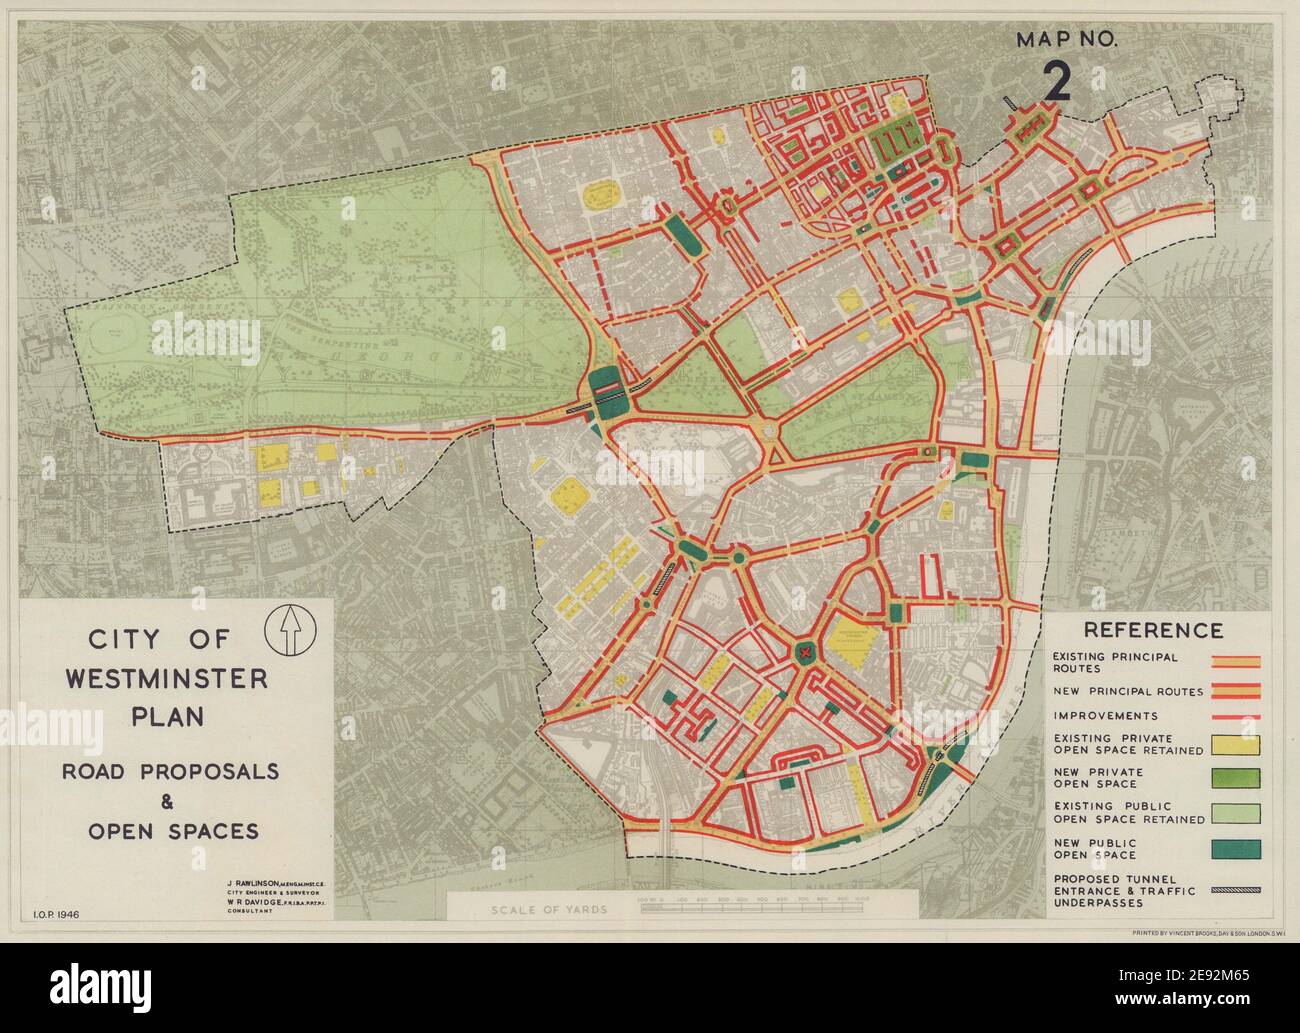 Plan der Stadt Westminster. Neue Straßenvorschläge & Freiräume. RAWLINSON 1946-Karte Stockfoto